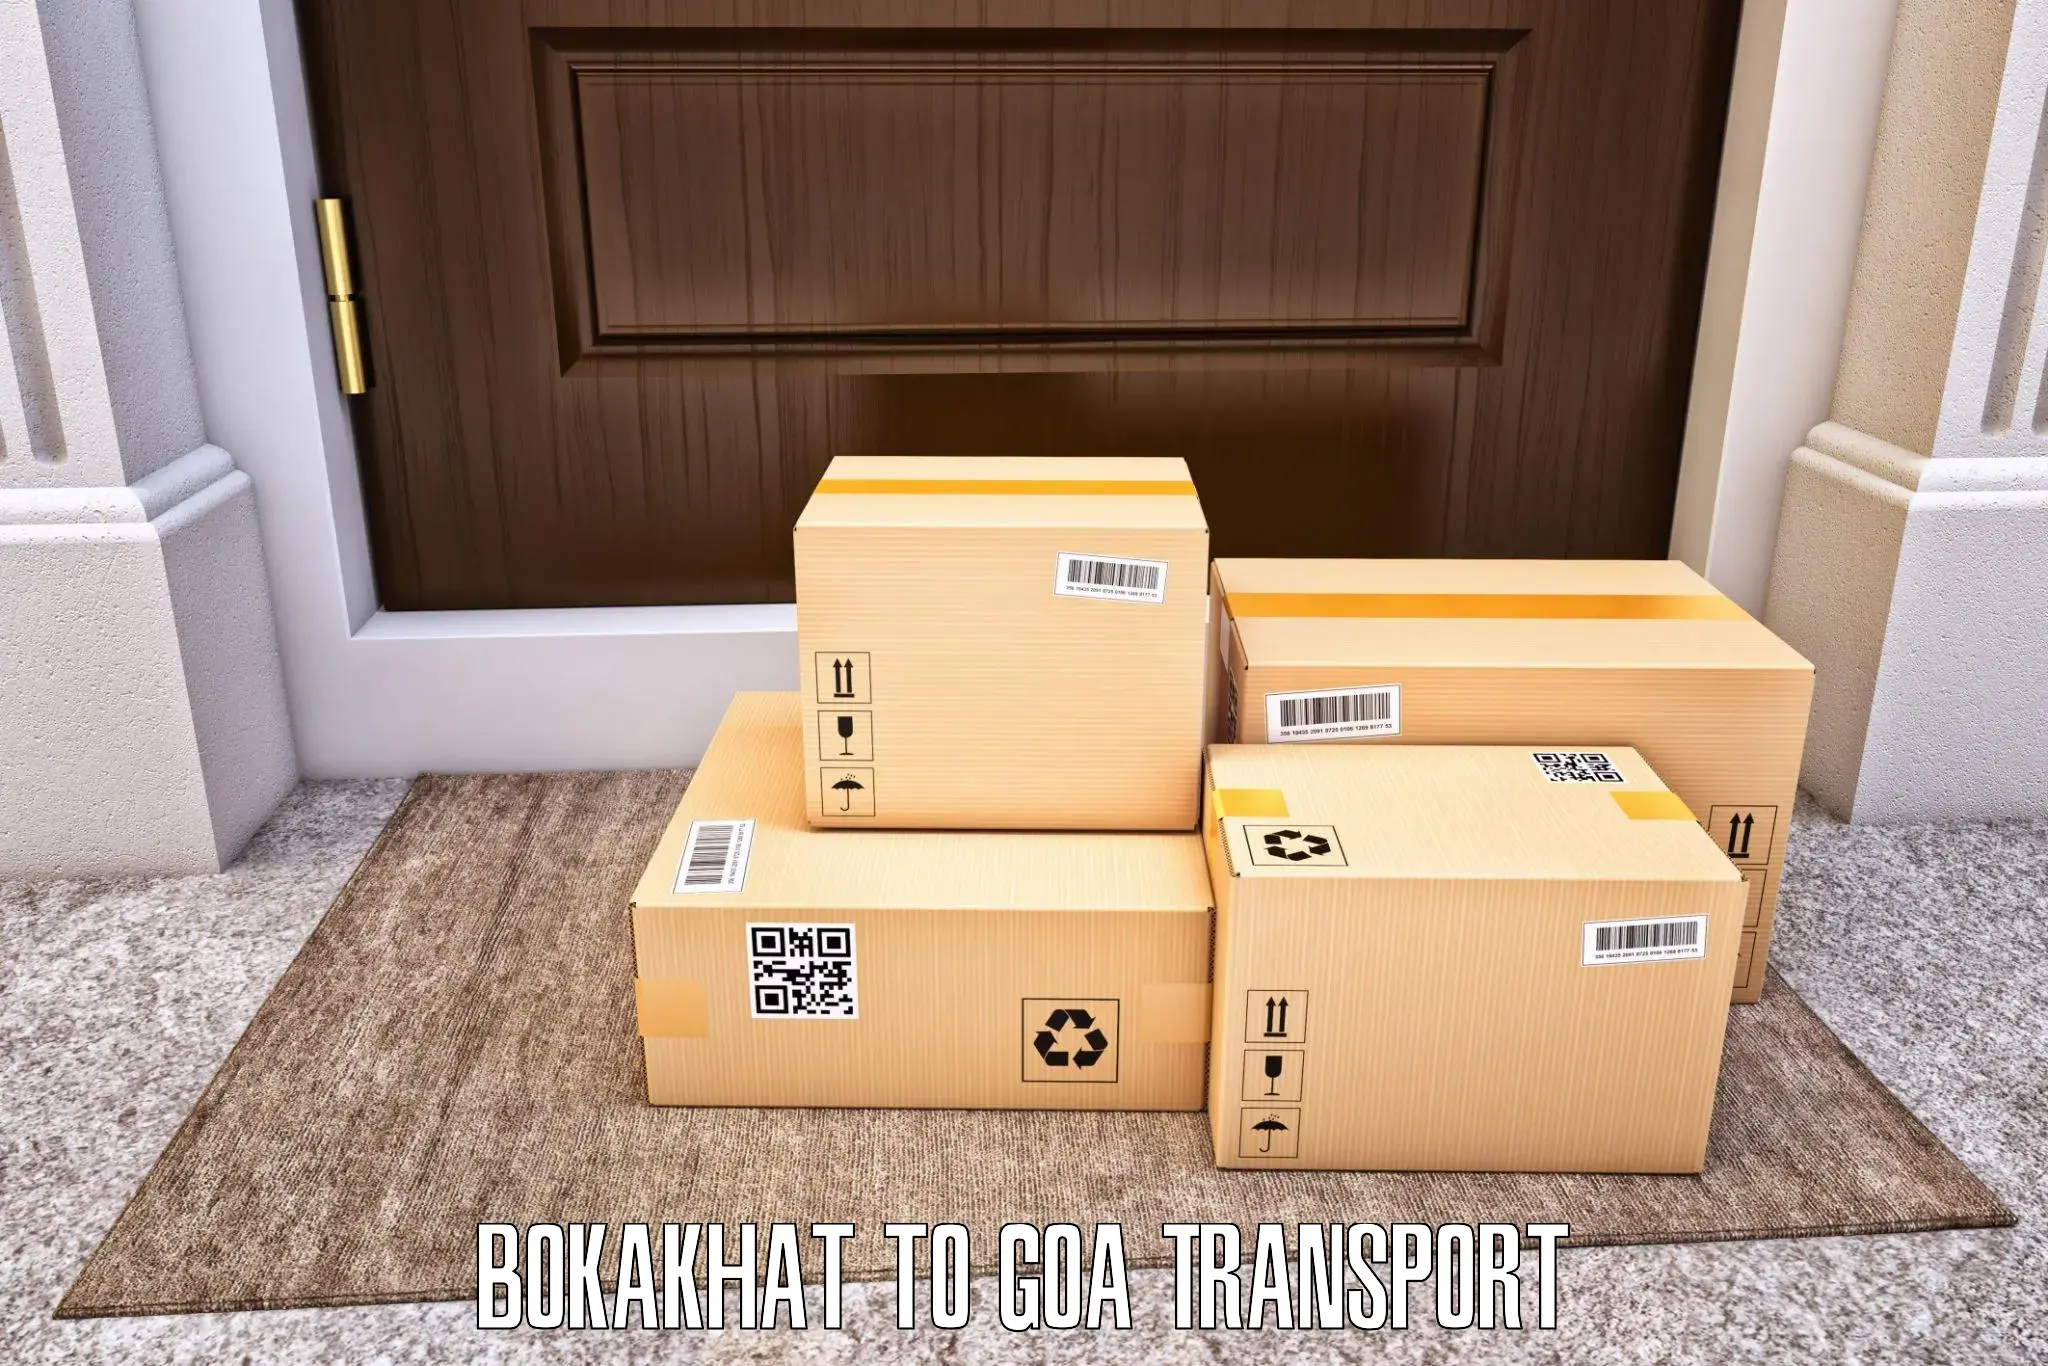 Cargo transport services Bokakhat to Sanvordem